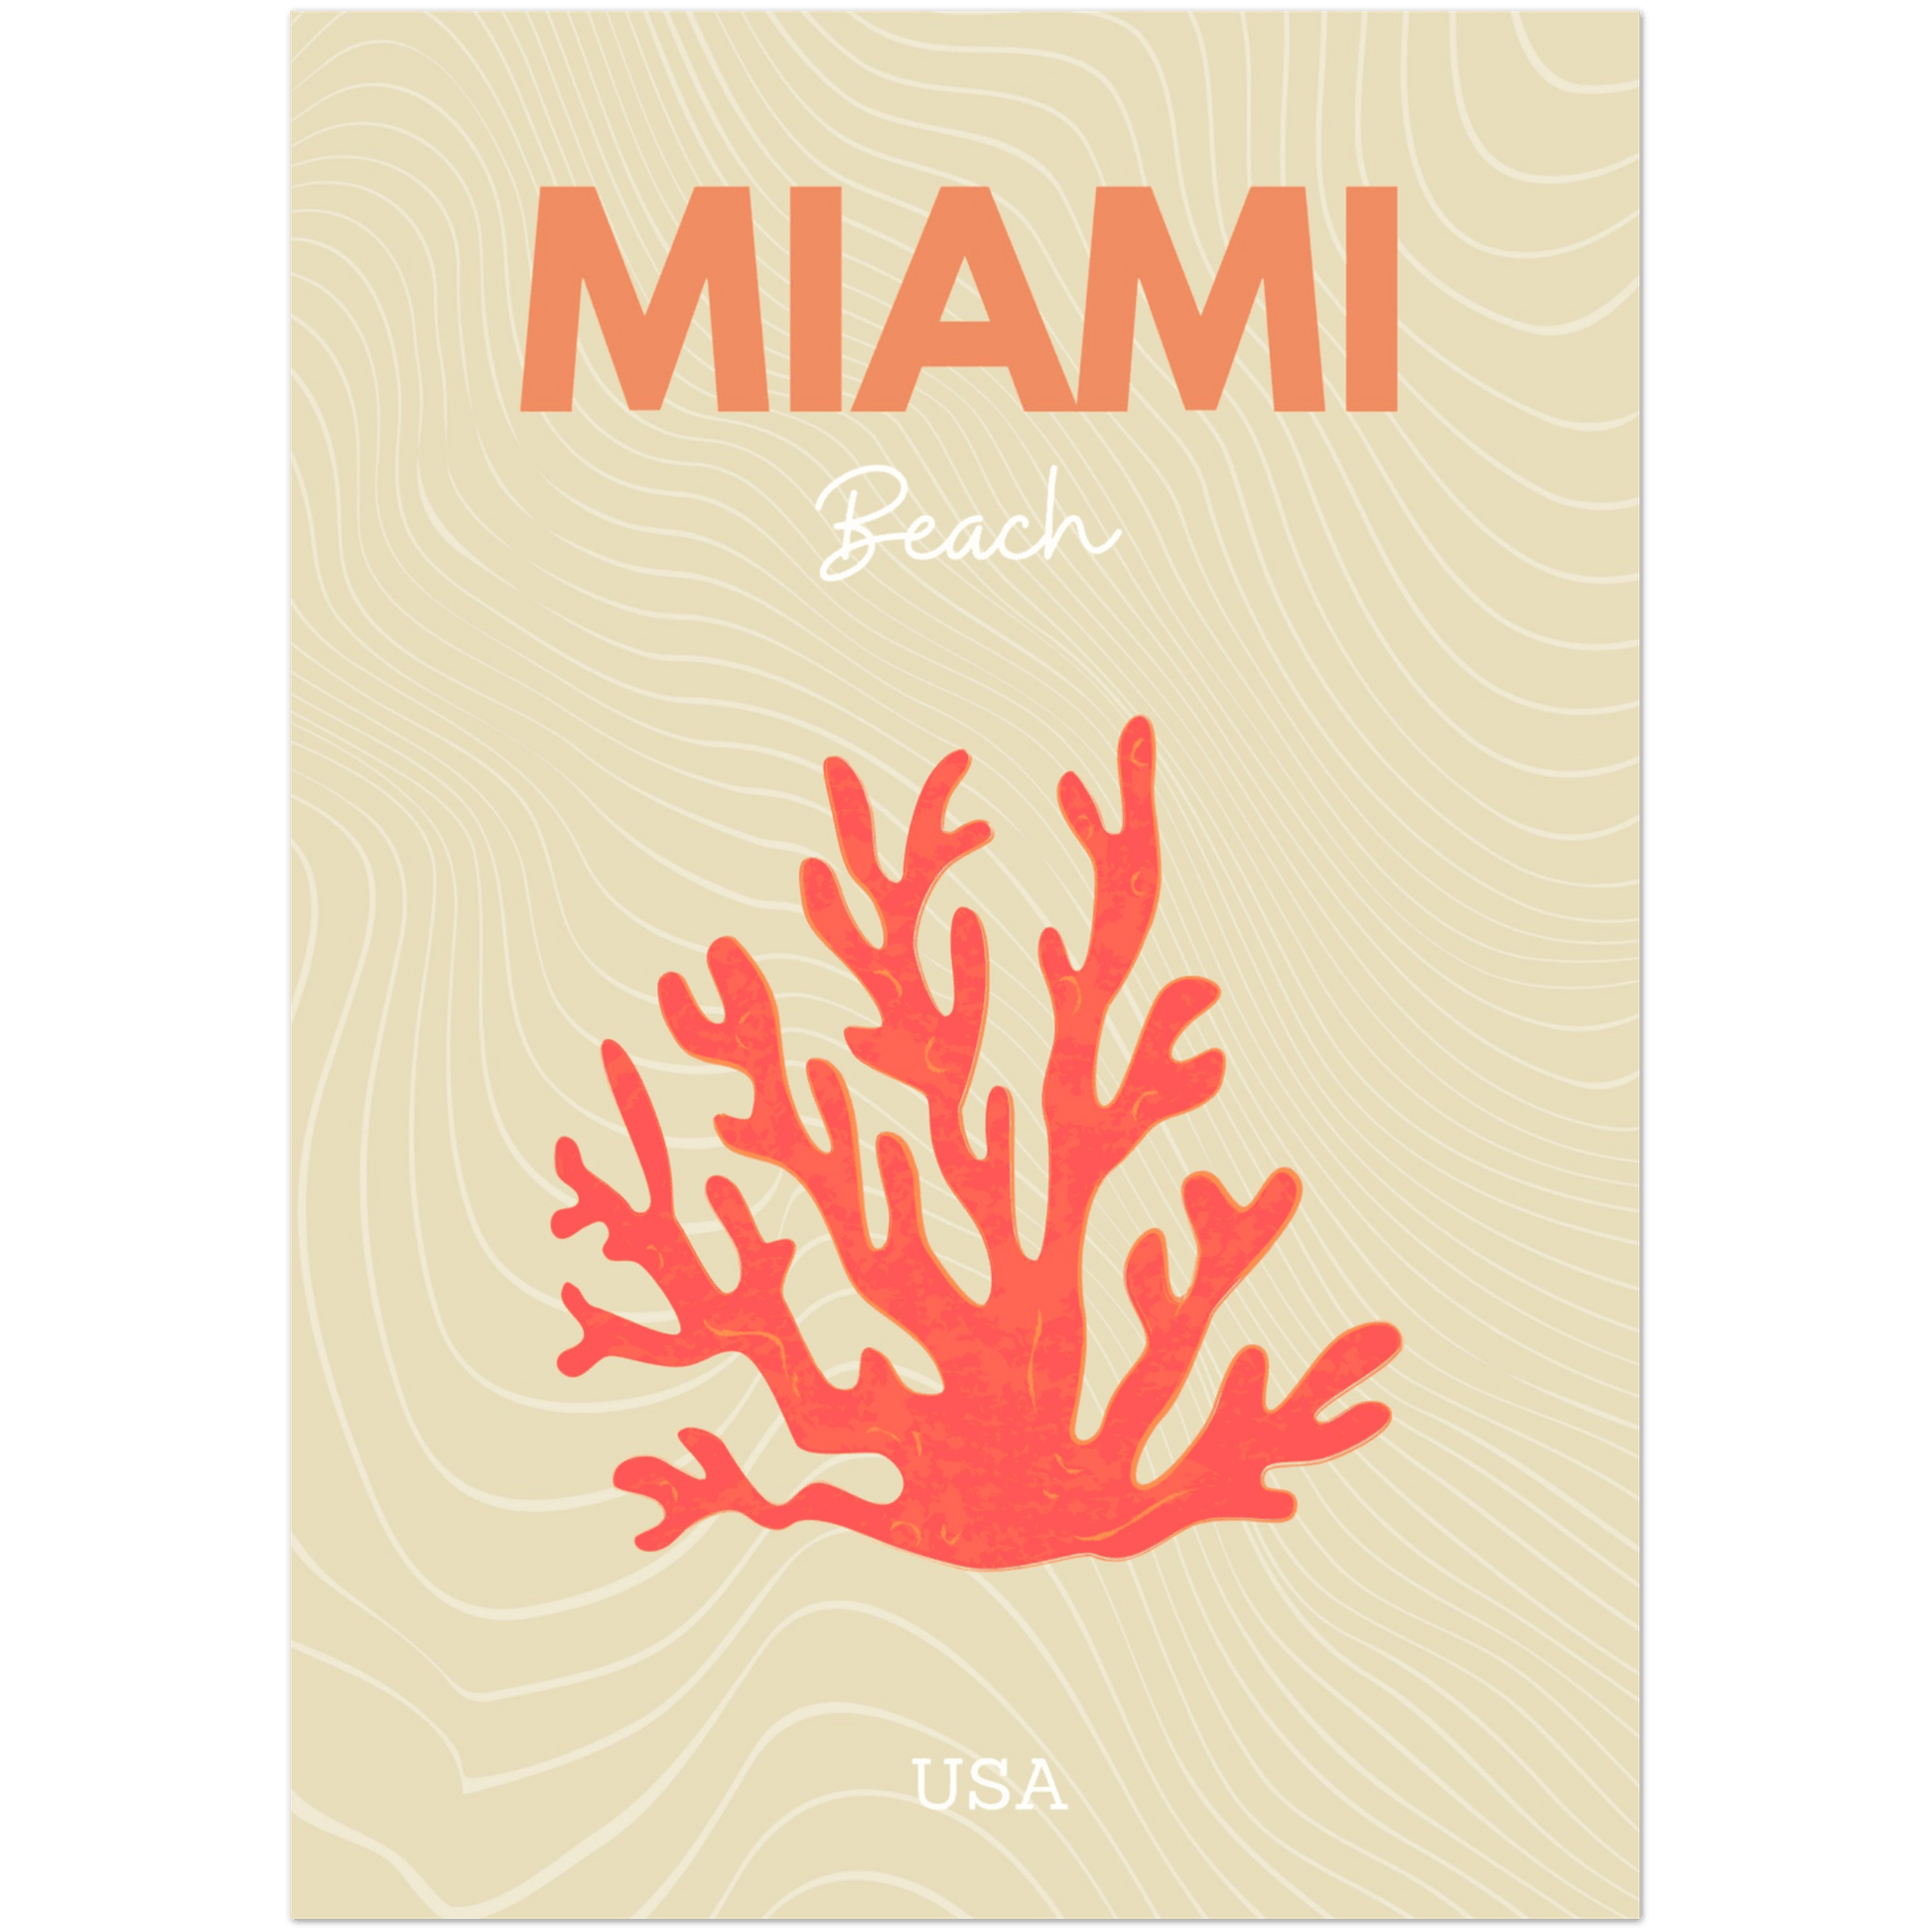 Miami - A4, A3, A2 Posters Base - Poster Print Shop / Art Prints / PostersBase